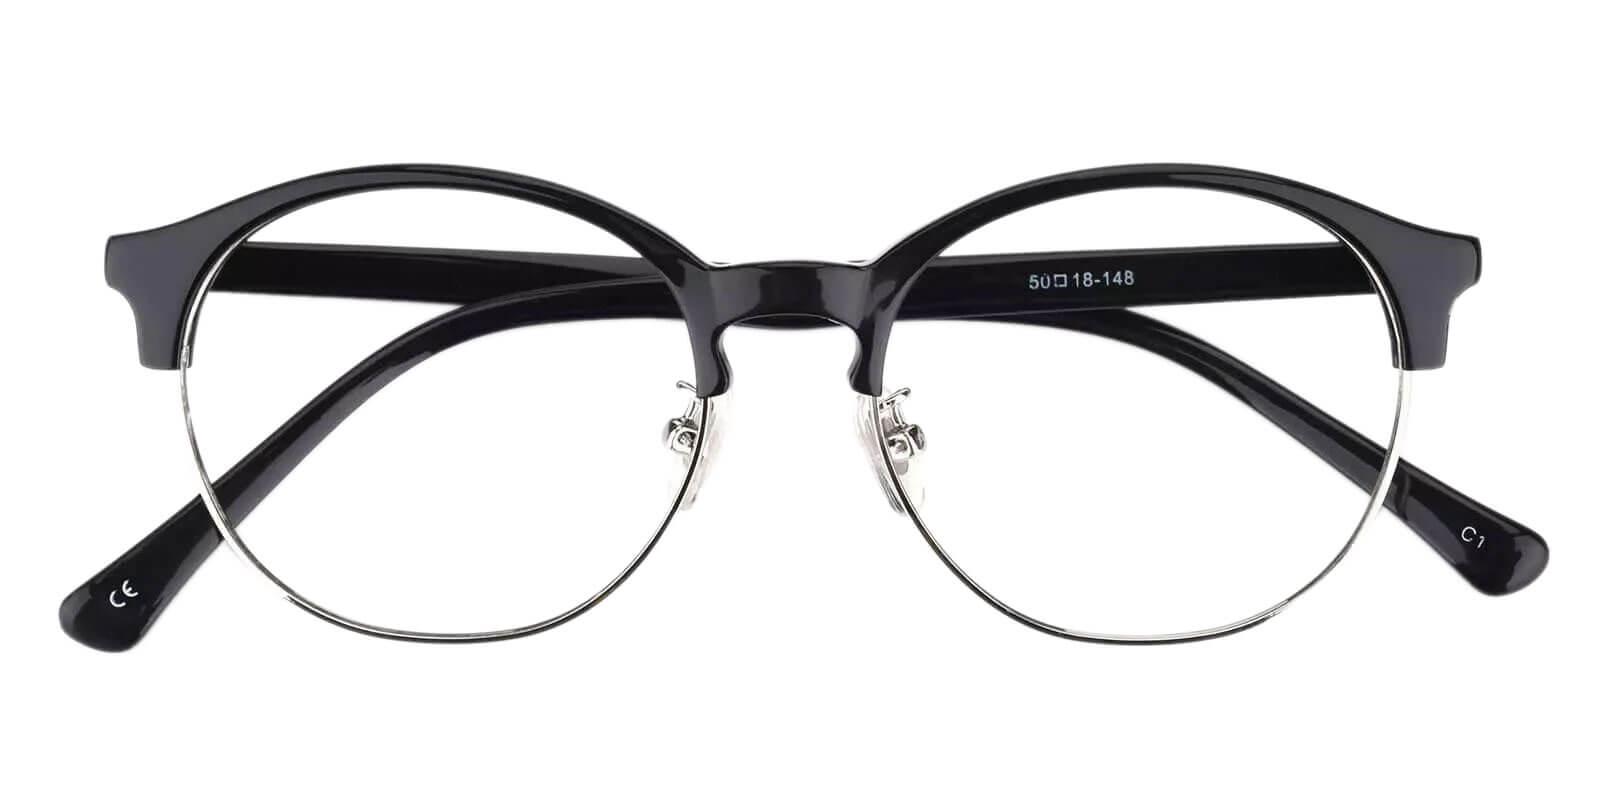 Pelsor Black Combination Eyeglasses , NosePads Frames from ABBE Glasses